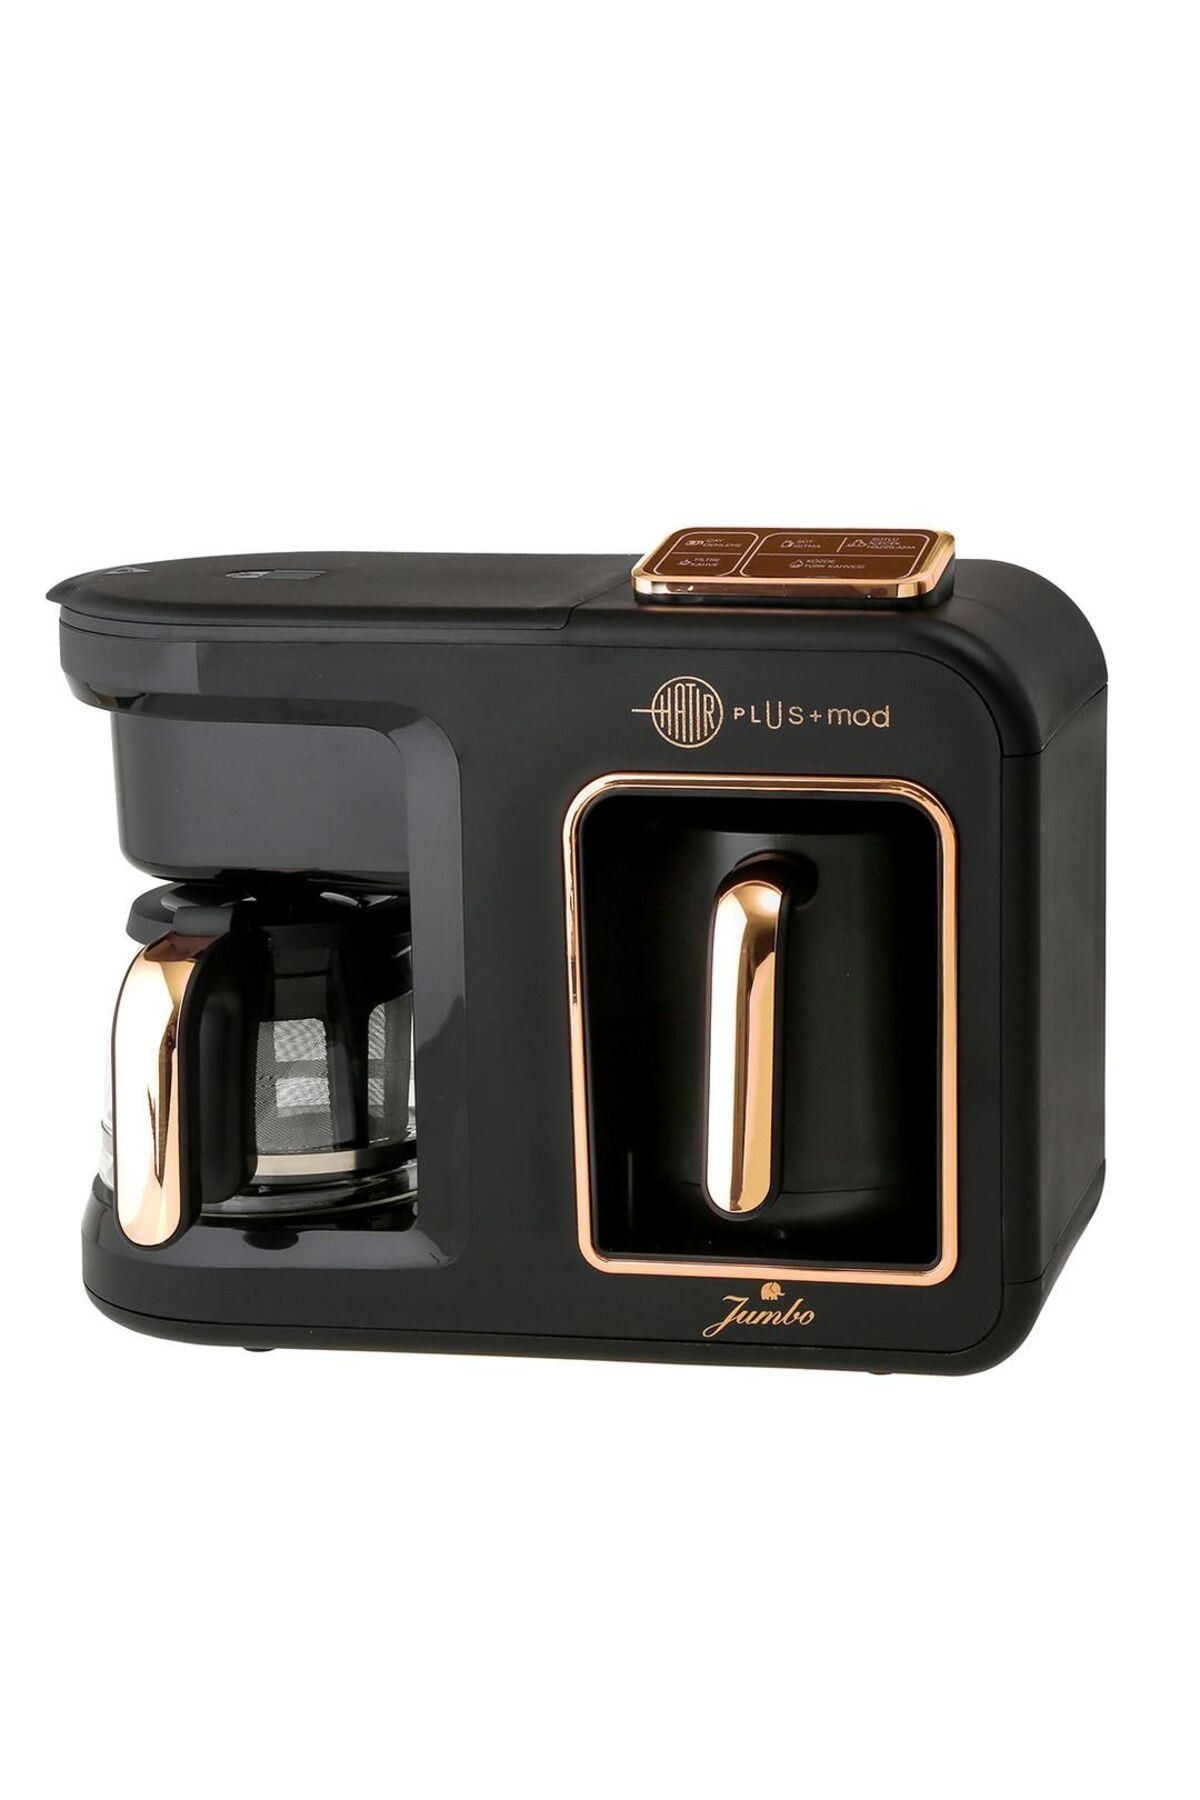 Jumbo Hatır Plus Mod 5 In 1 Black Copper Çay Ve Kahve Makinesi 500.01.01.8940